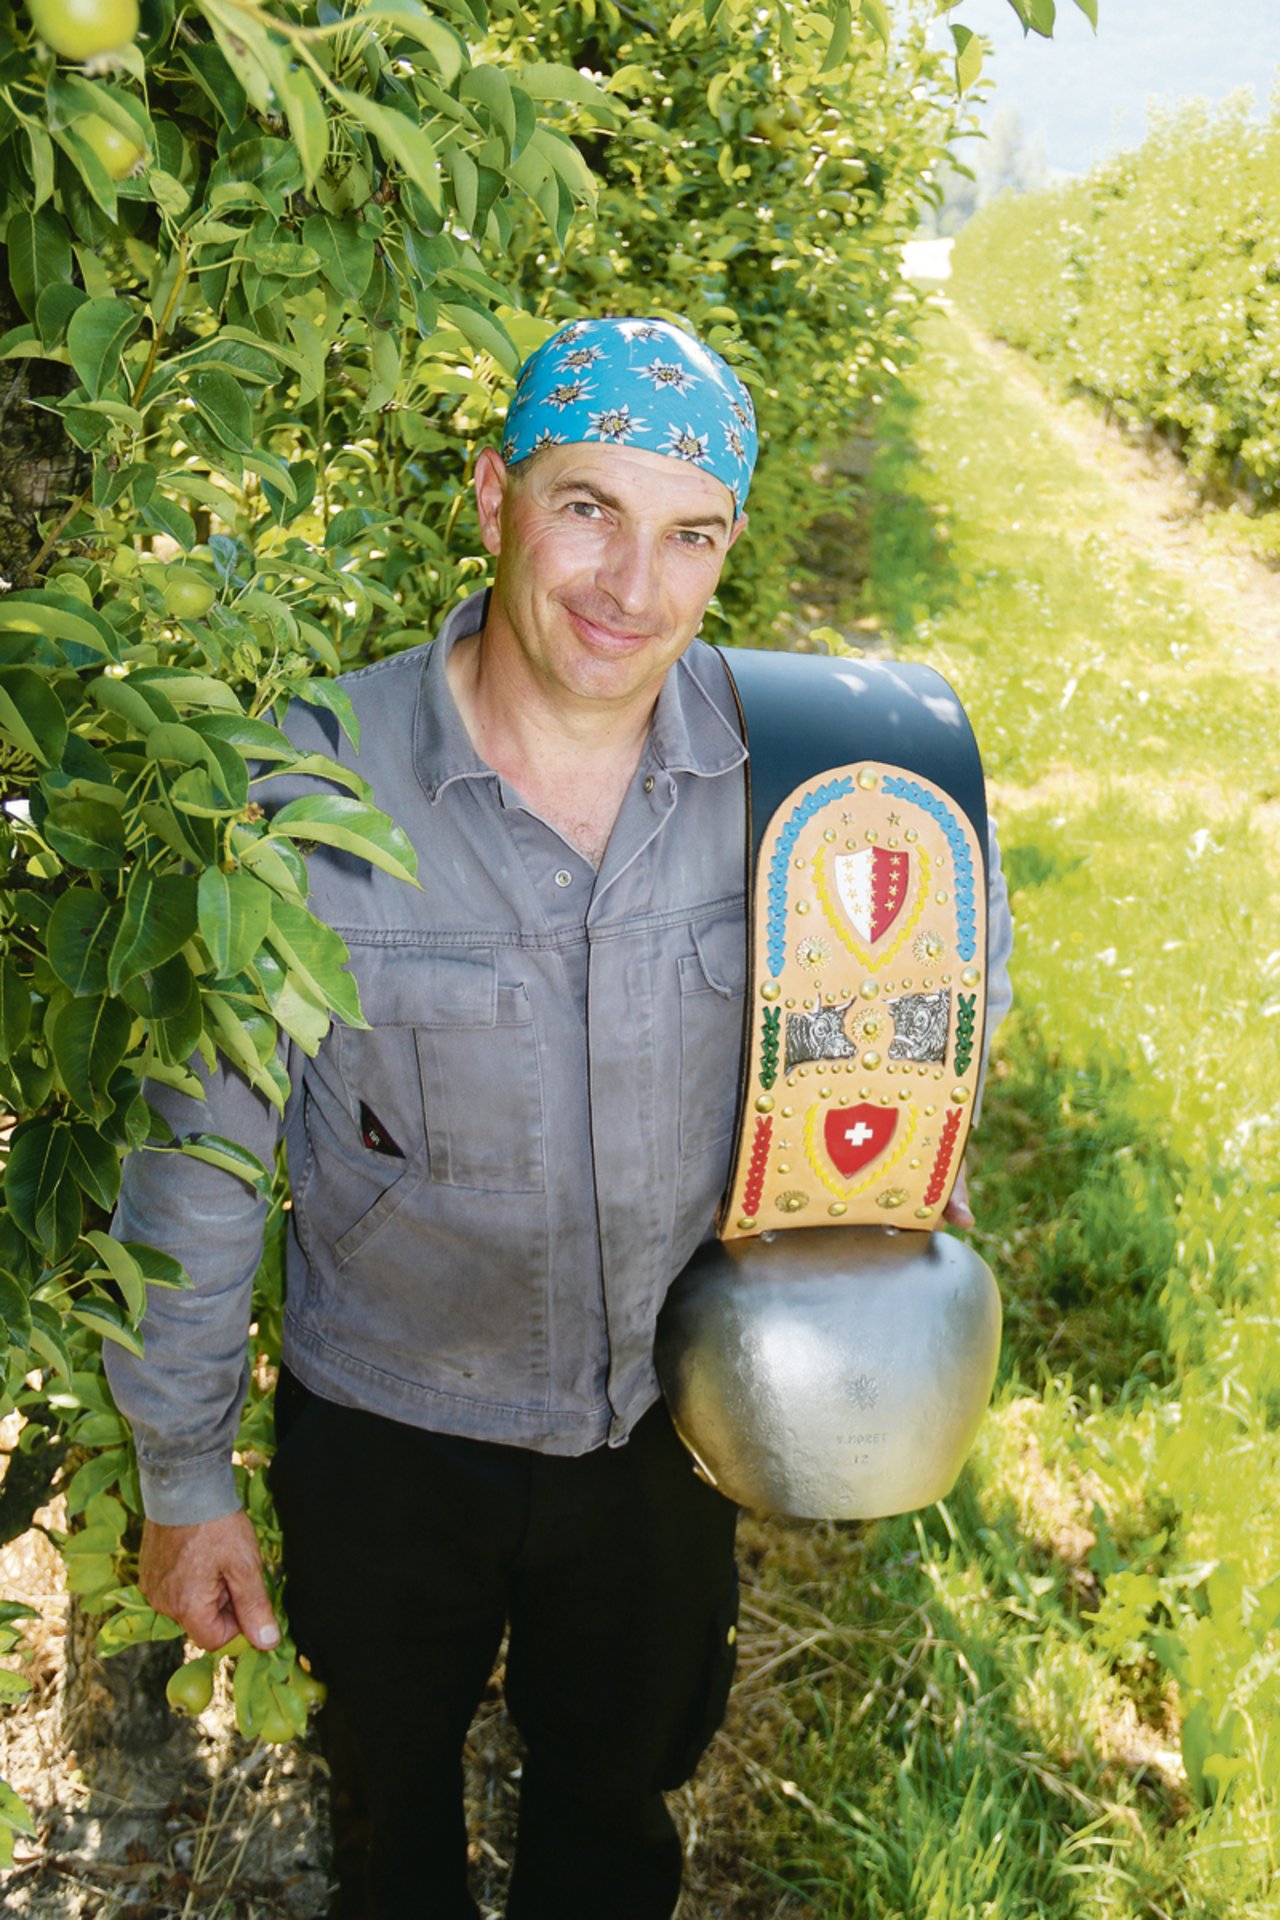 Yan Morets Schmiedewerkstatt liegt mitten in Walliser Aprikosen- und Apfelanlagen. Stolz präsentiert er eine Treichel, der handgefertigte Glockenriemen stammt von einem Geschäftspartner.